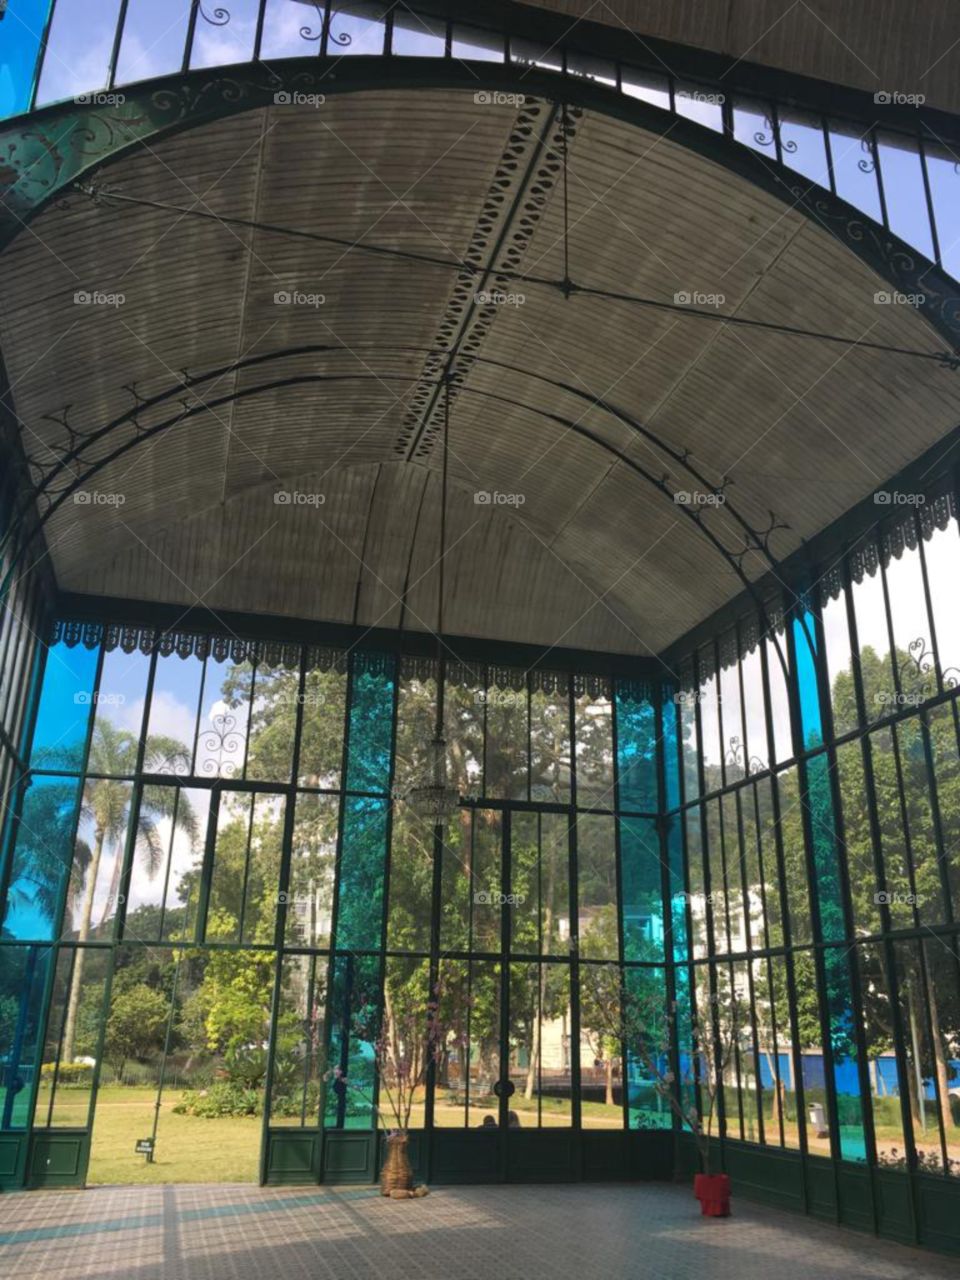 vidriado, transparencia, paisaje vista desde las ventanas, arquitectura. Río de Janeiro. Plaza pública.